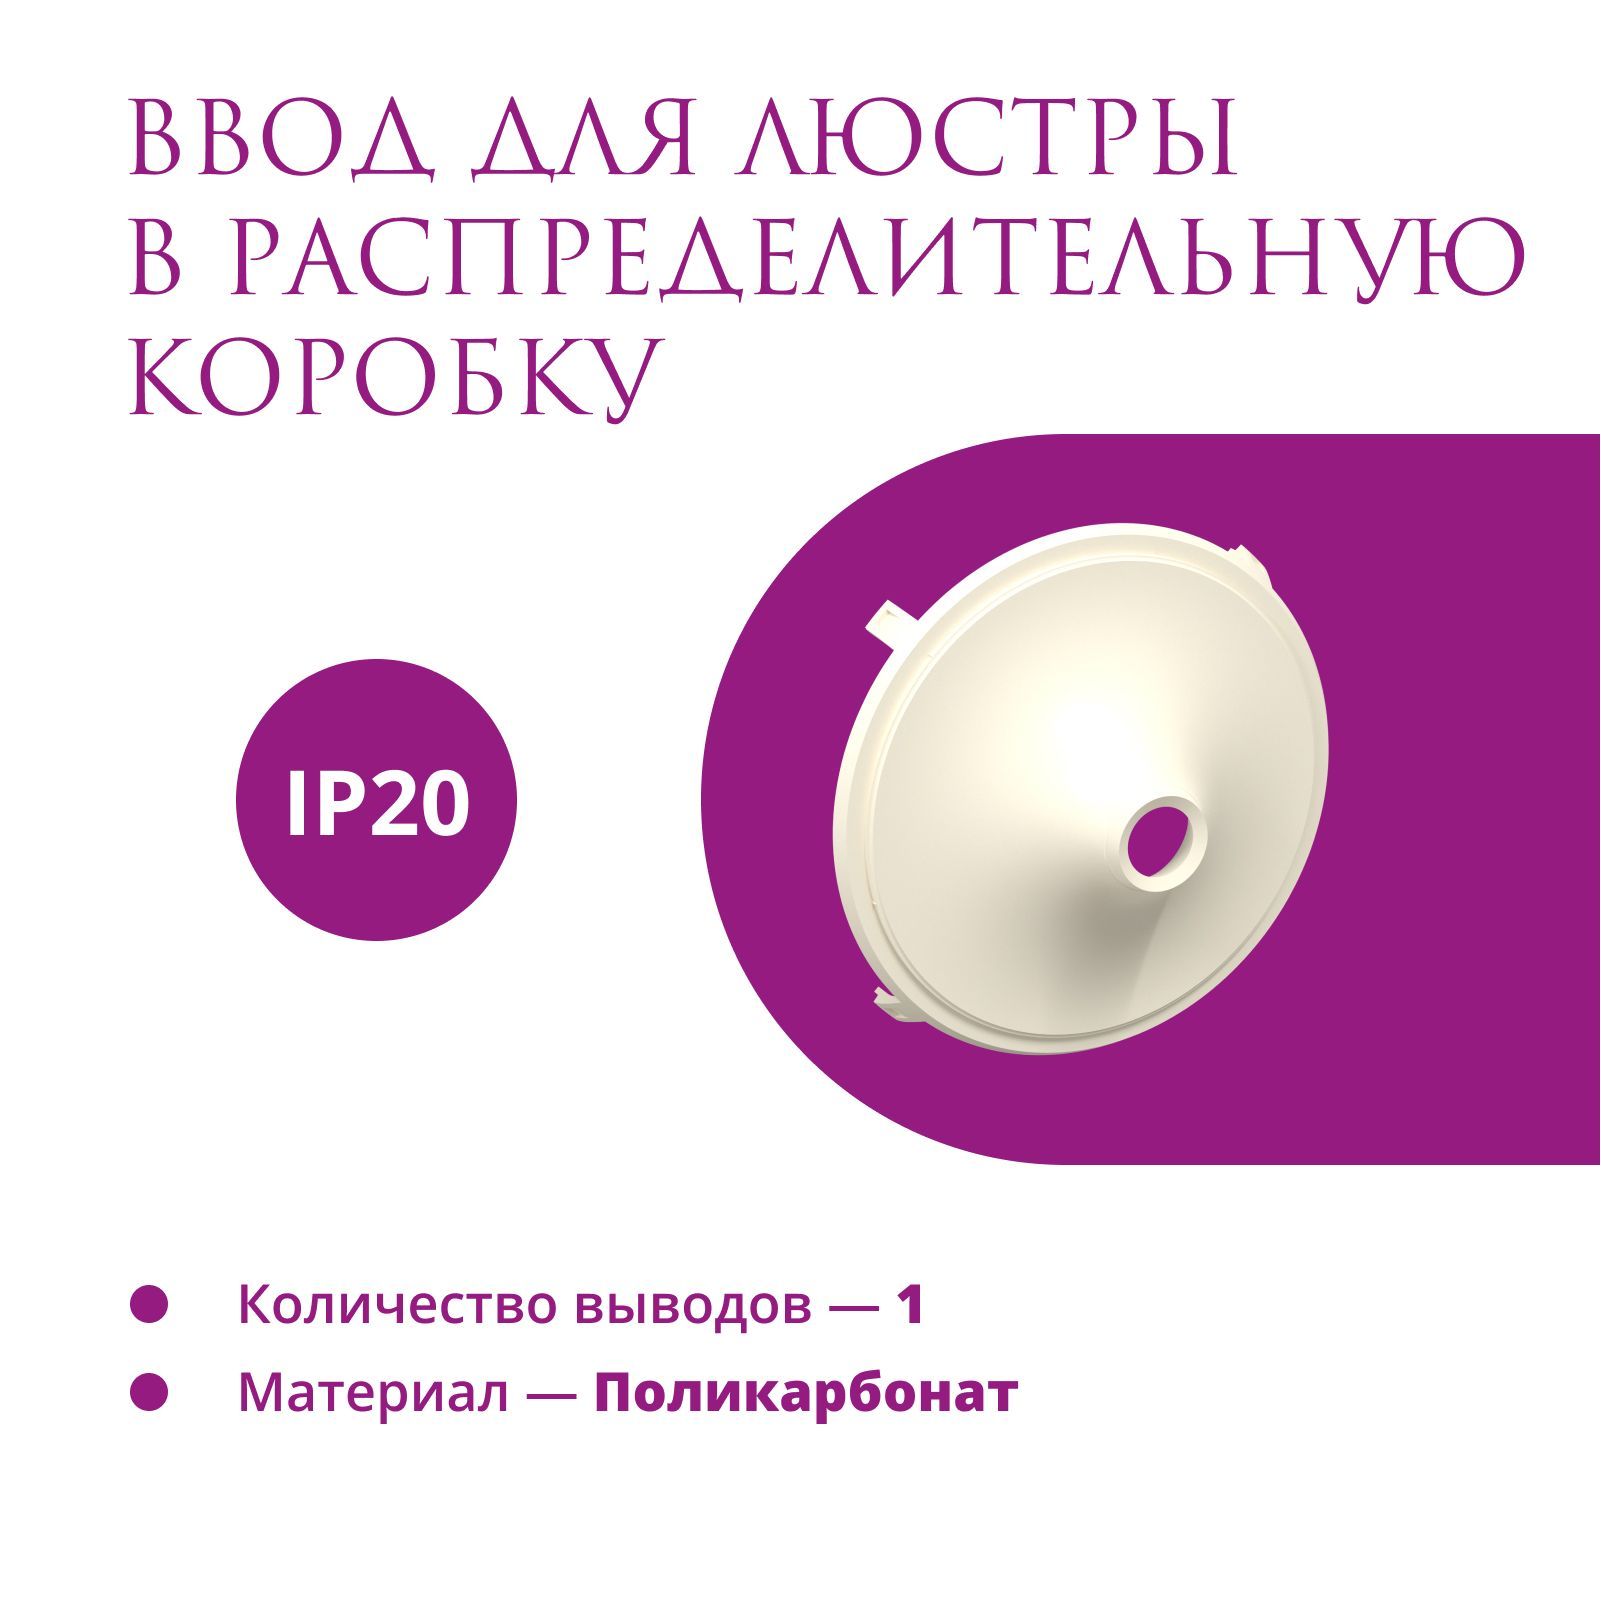 Ввод в распределительную коробку для светильника OneKeyElectro (Rotondo), цвет бежевый